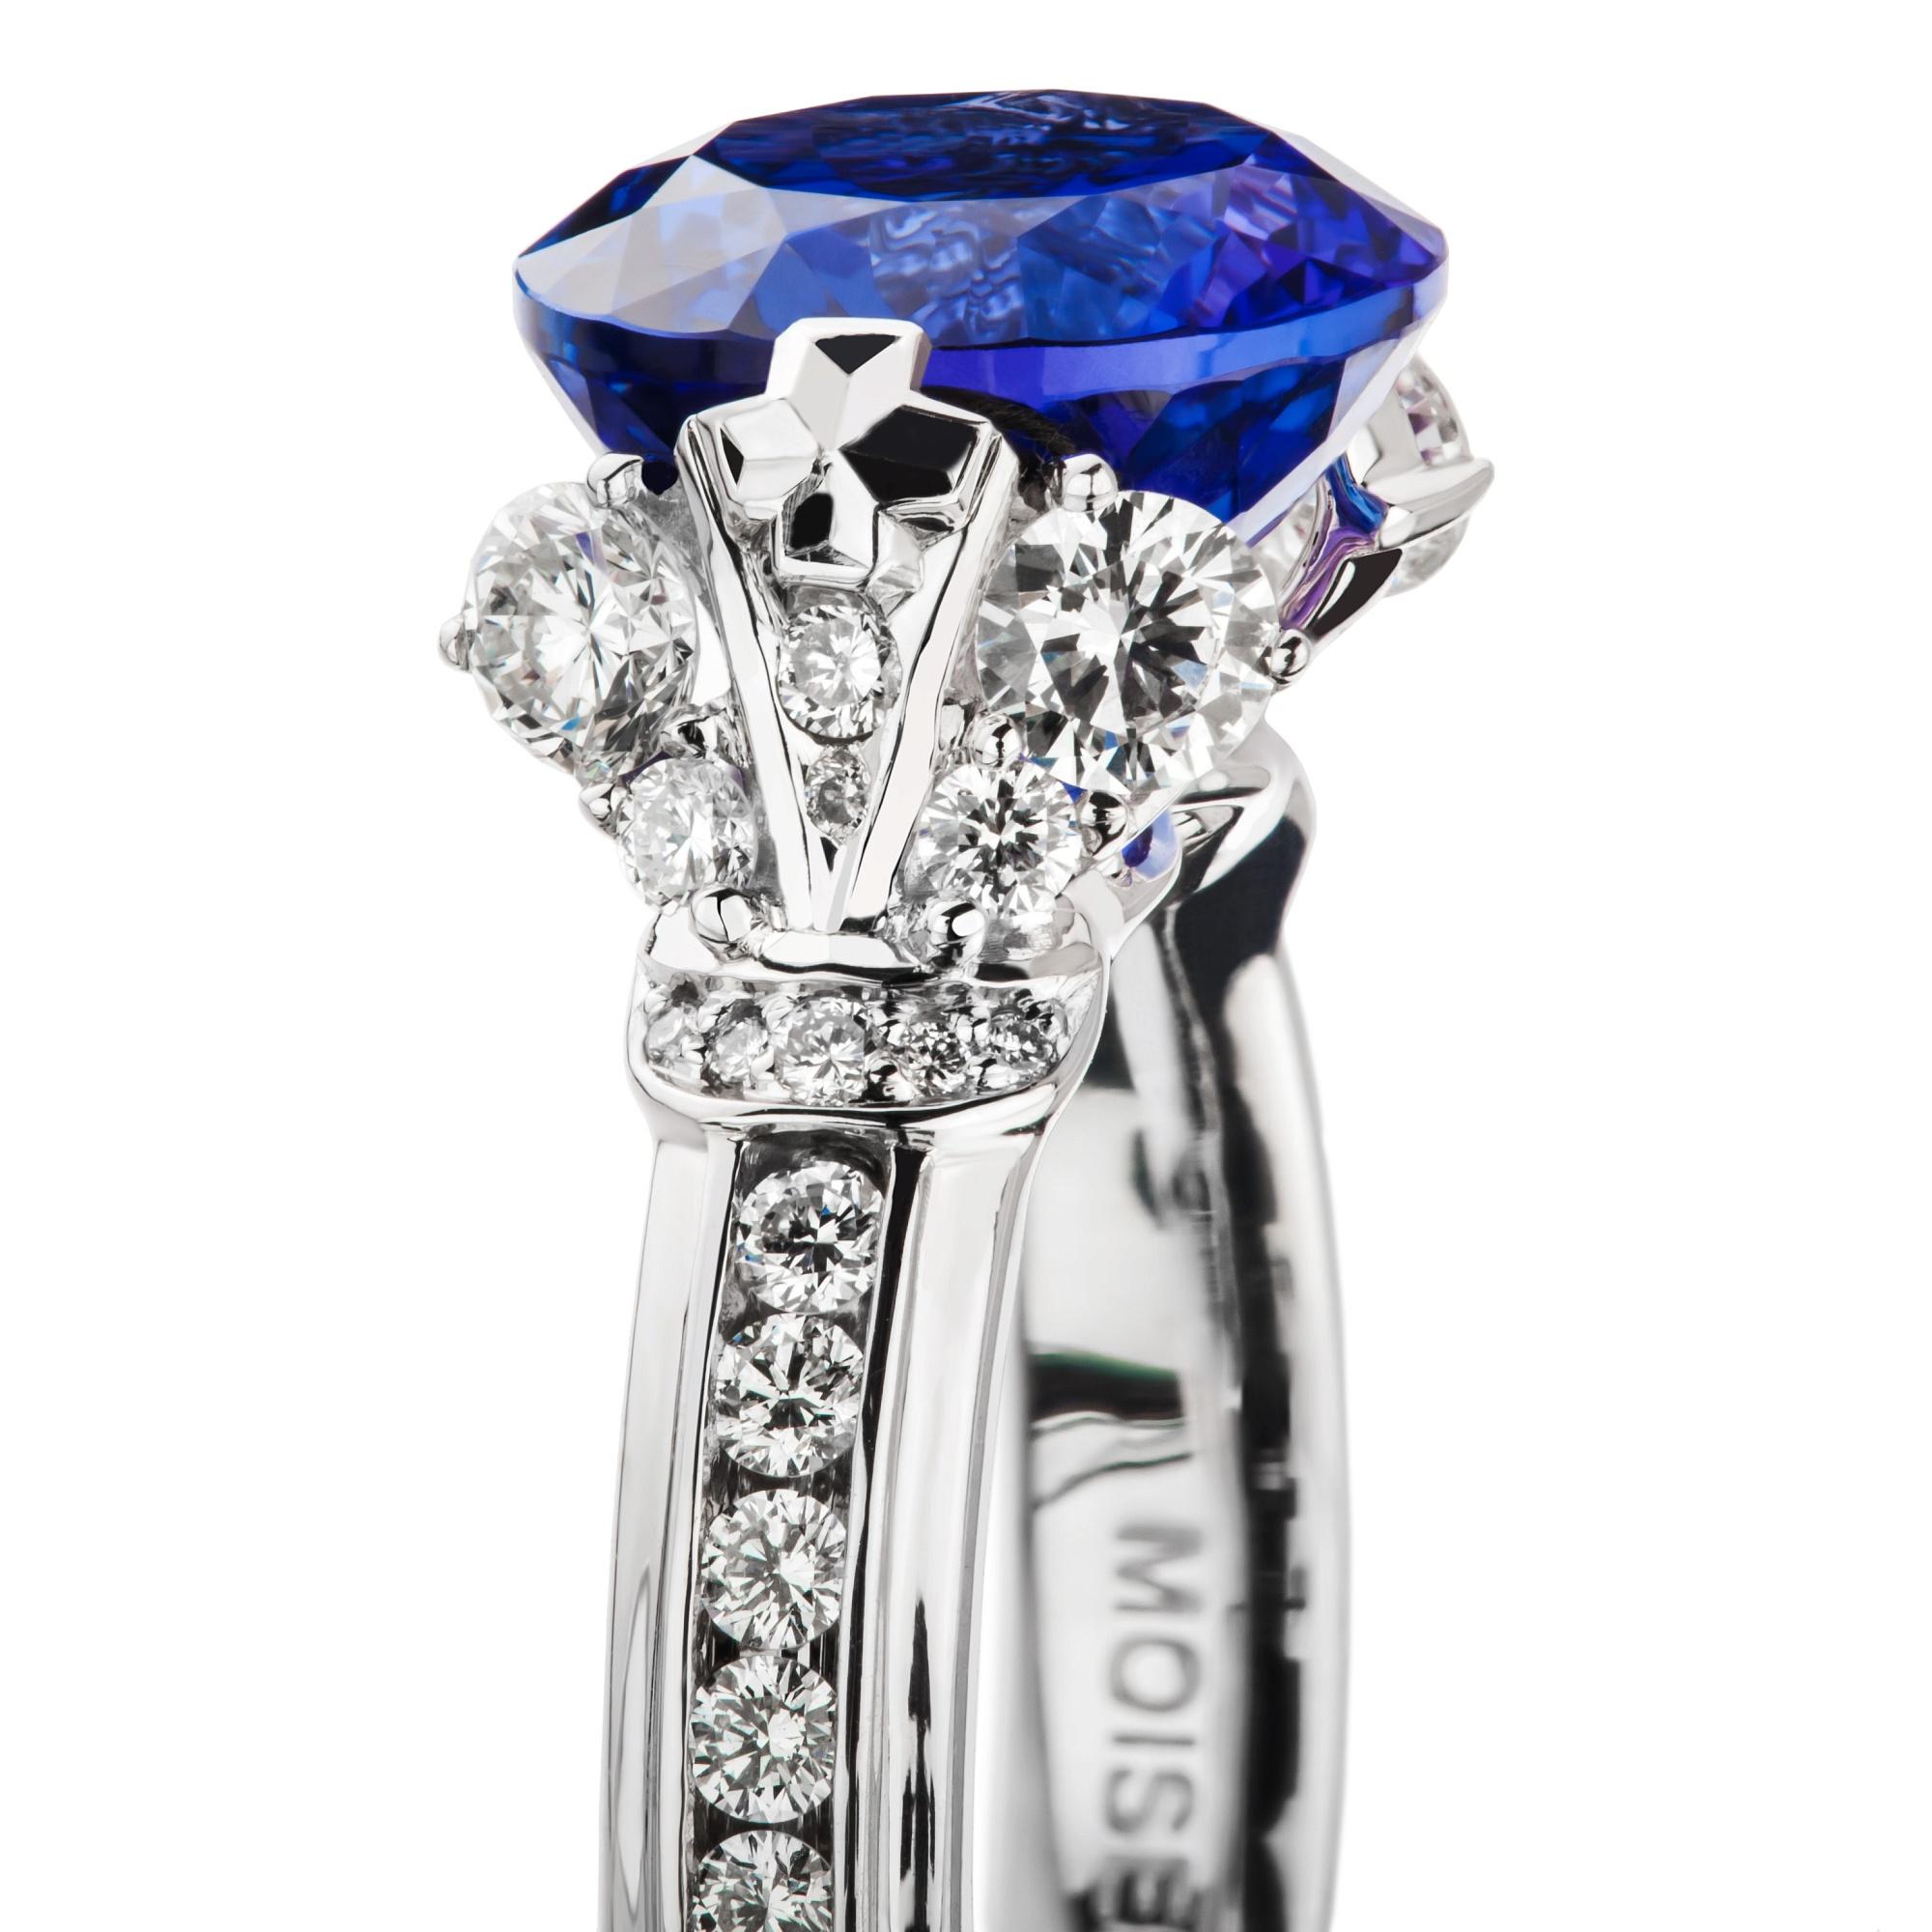 Elegant und klassisch -  Der Ring aus Diamanten und einem lebhaften 5-karätigen Tansanit ist von der prächtigen Zeit Russlands und Europas inspiriert. Dediziert der kaiserlichen Größe, dem Luxus, der Schönheit und dem edlen Streben, werden die